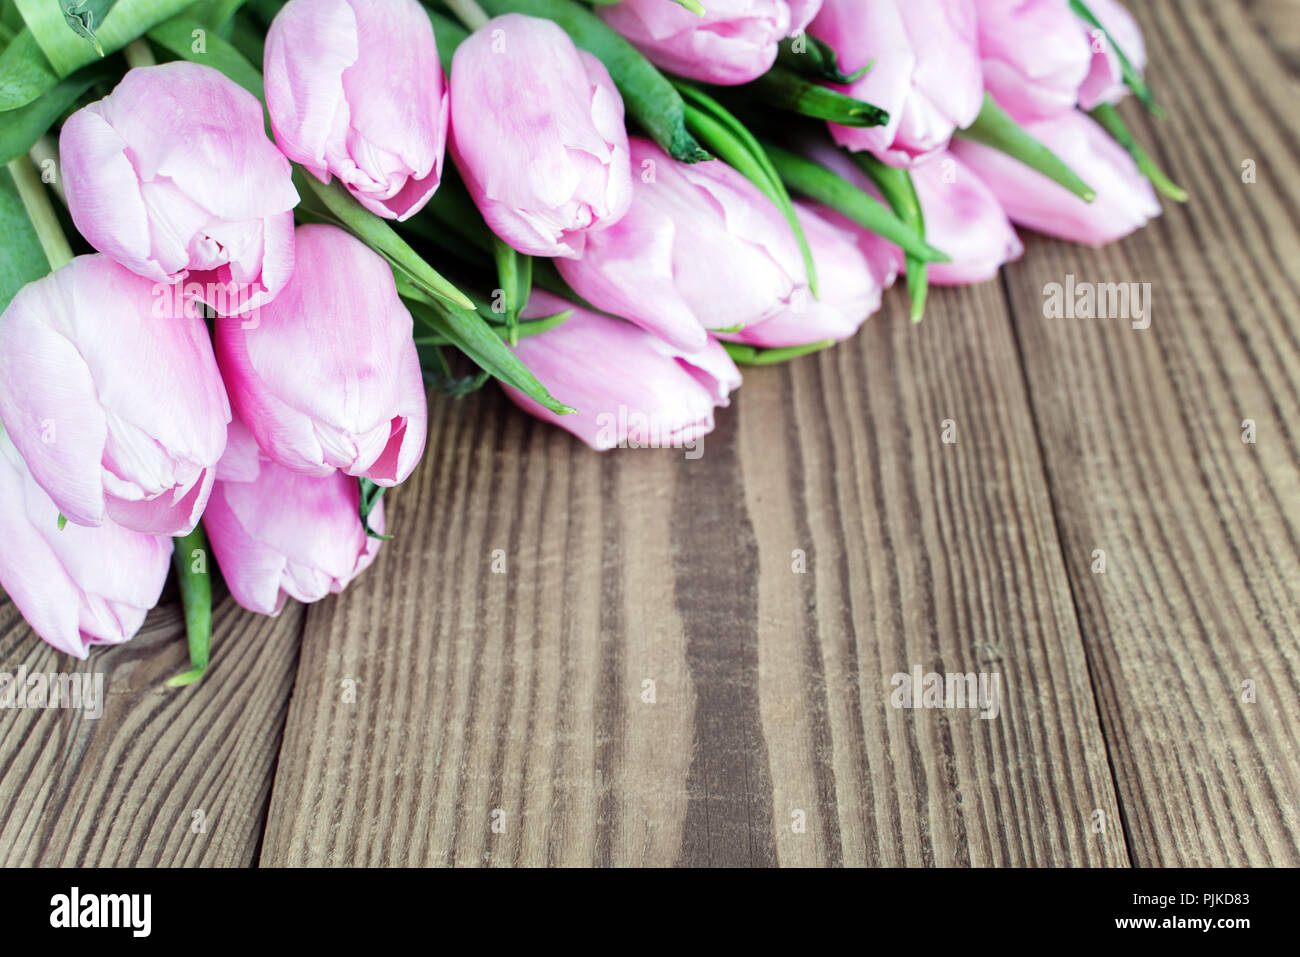 Blumenstrauß aus Tulpen Blumen auf dem Hintergrund der alten hölzernen Brettern Stockfoto